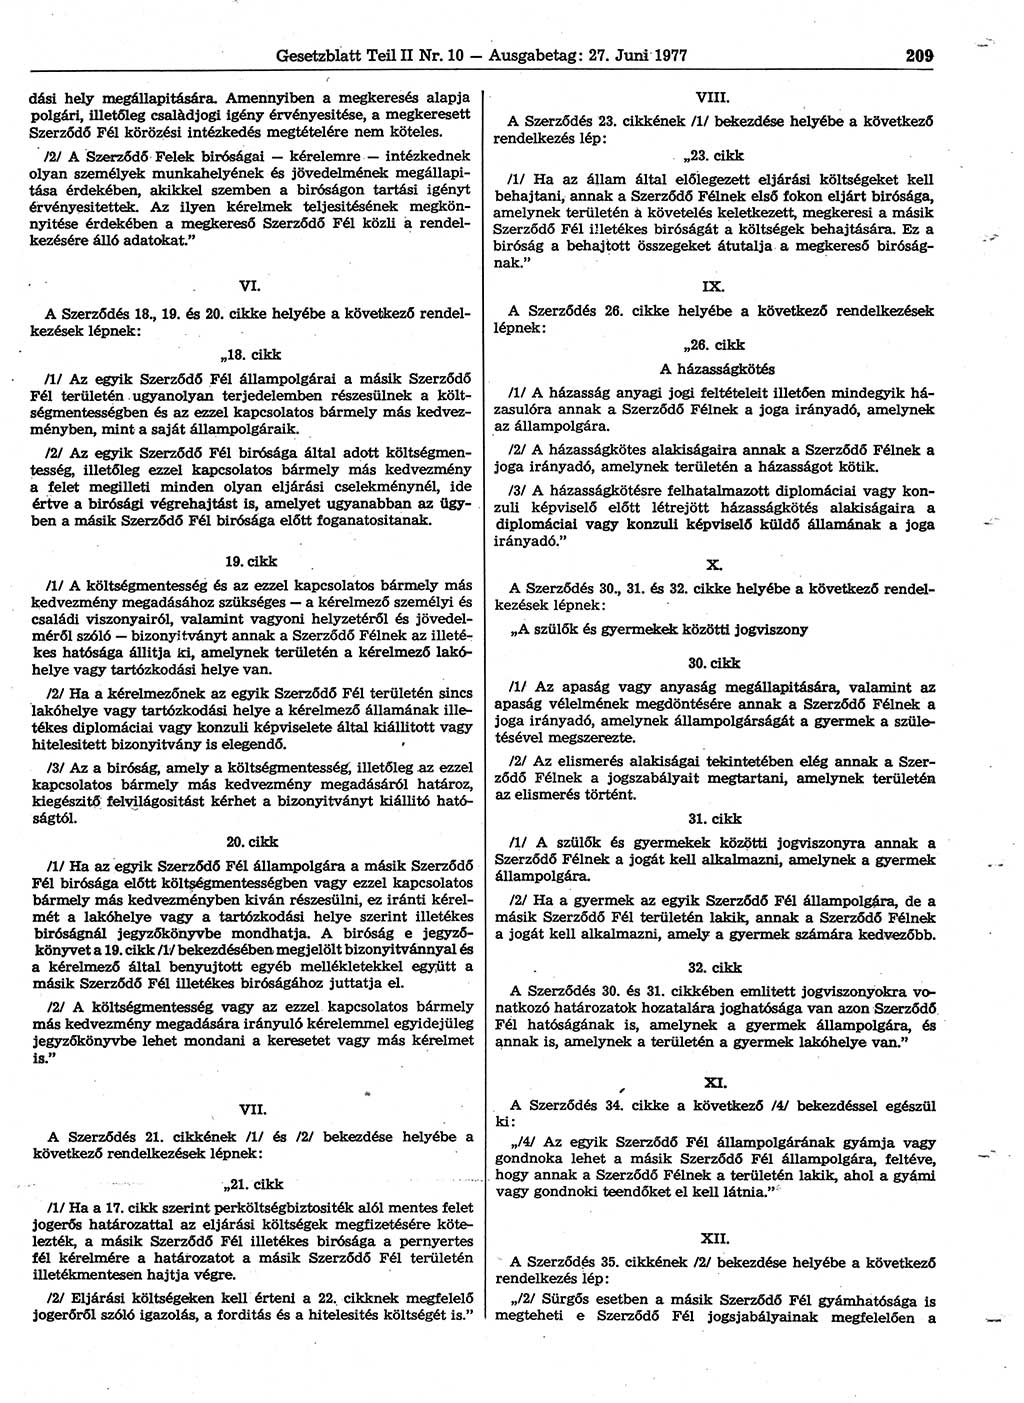 Gesetzblatt (GBl.) der Deutschen Demokratischen Republik (DDR) Teil ⅠⅠ 1977, Seite 209 (GBl. DDR ⅠⅠ 1977, S. 209)